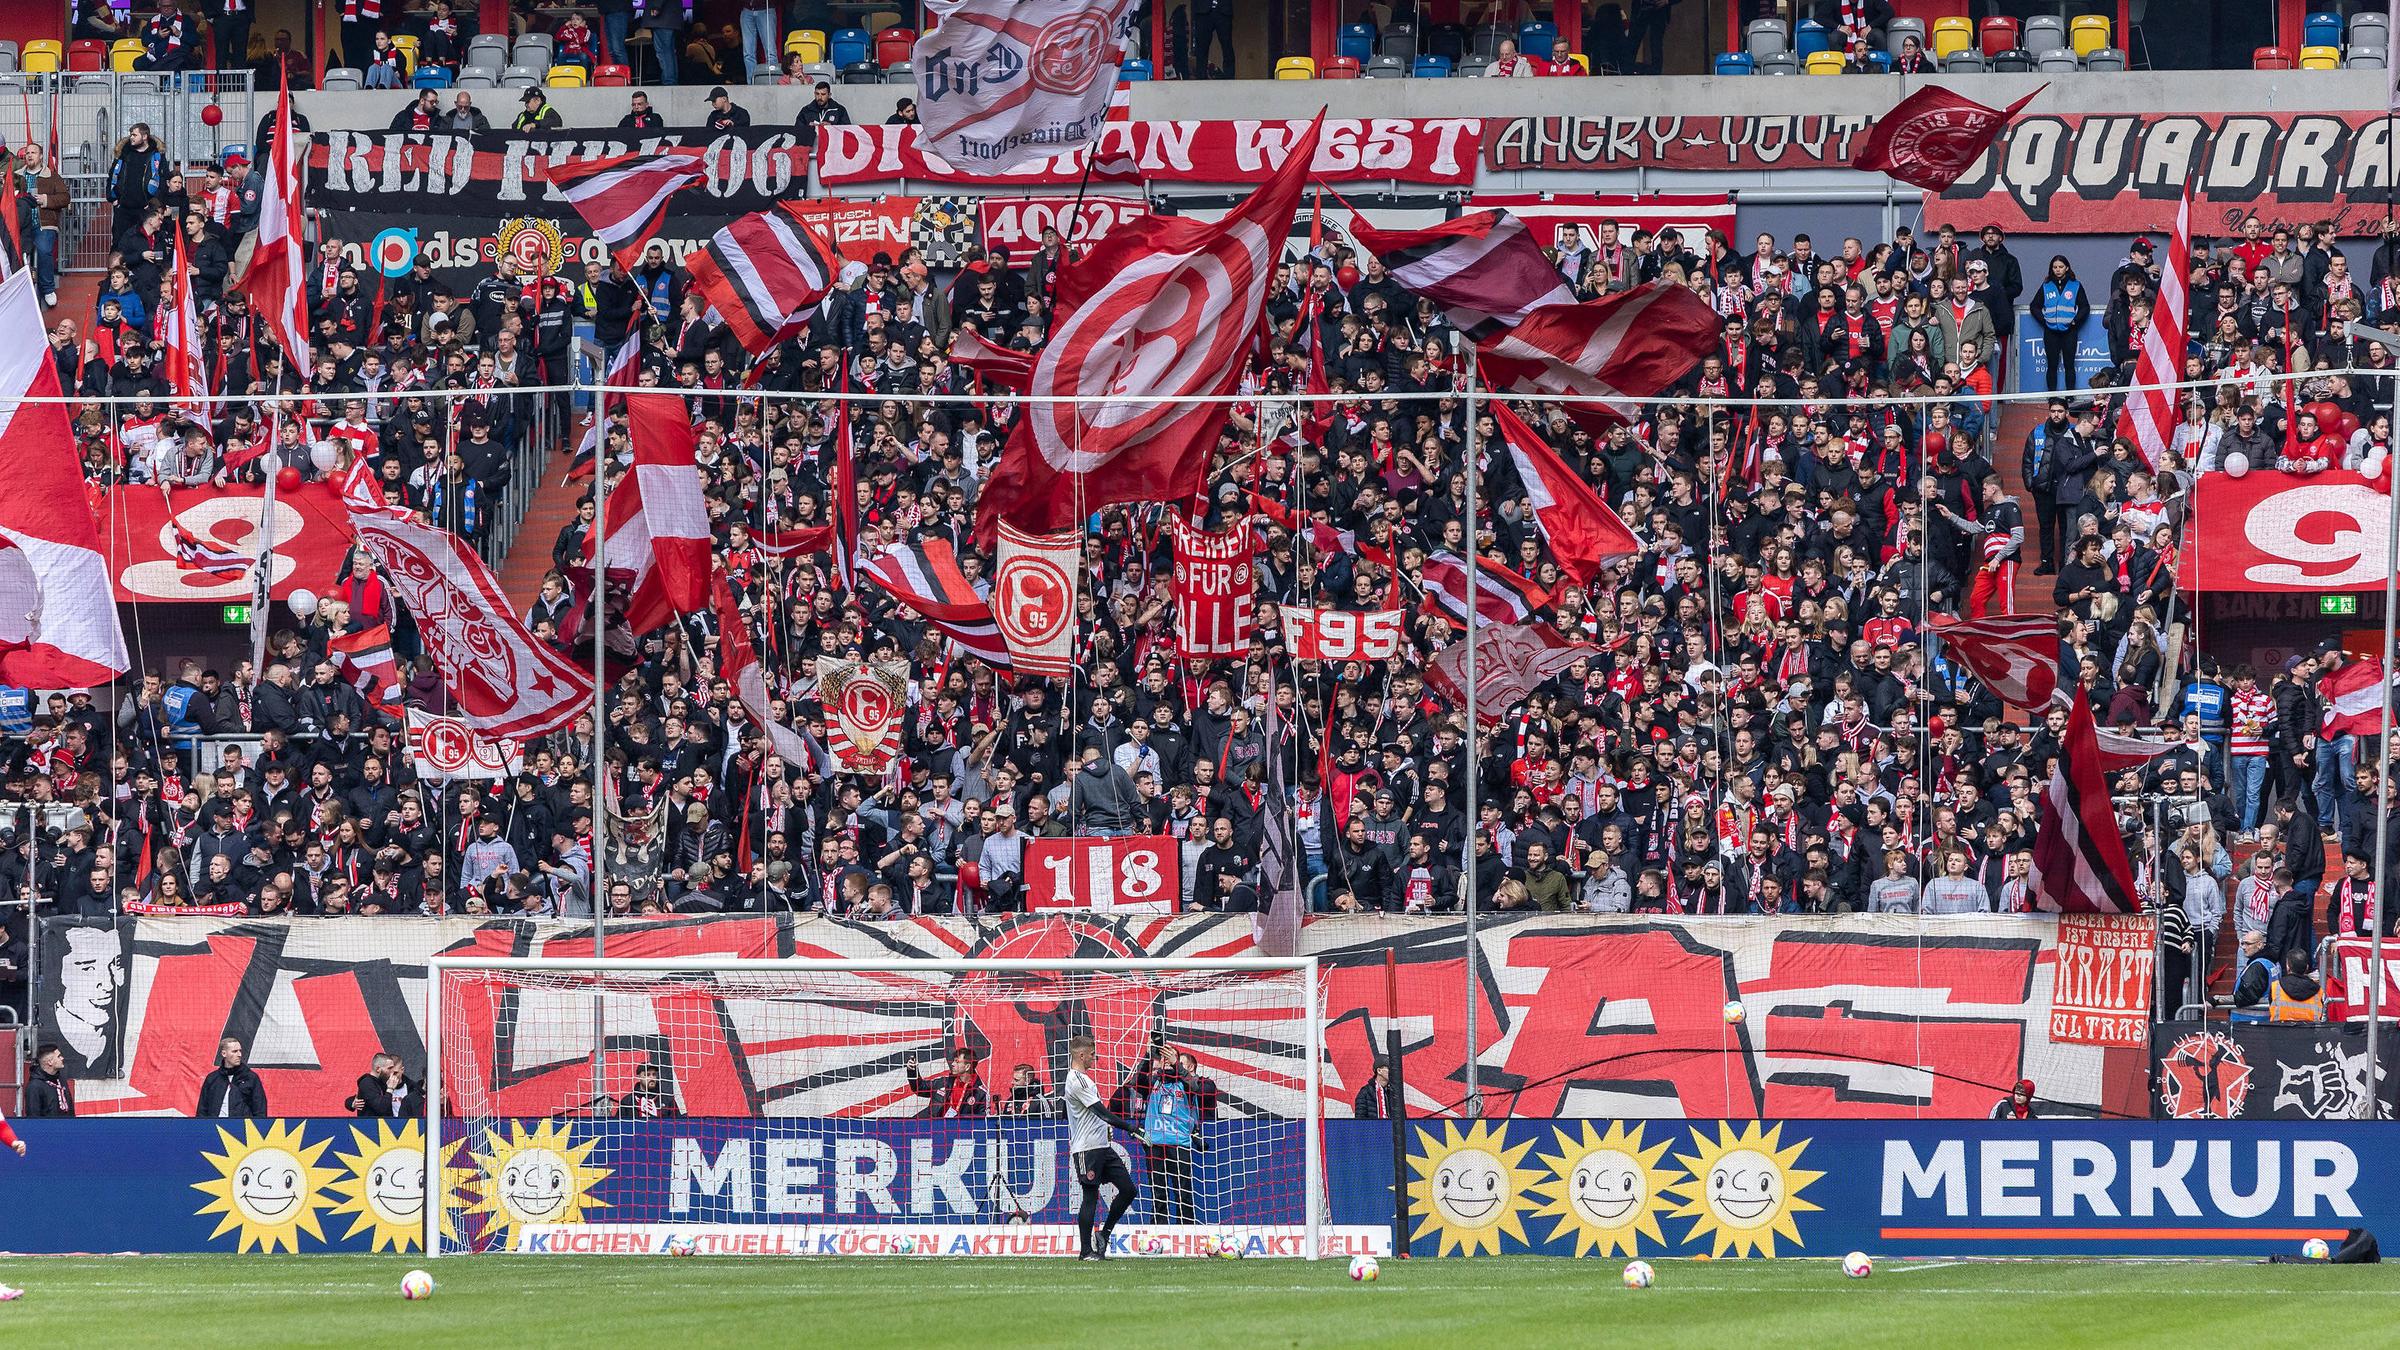 Fußball Düsseldorf will Fans freien Eintritt gewähren